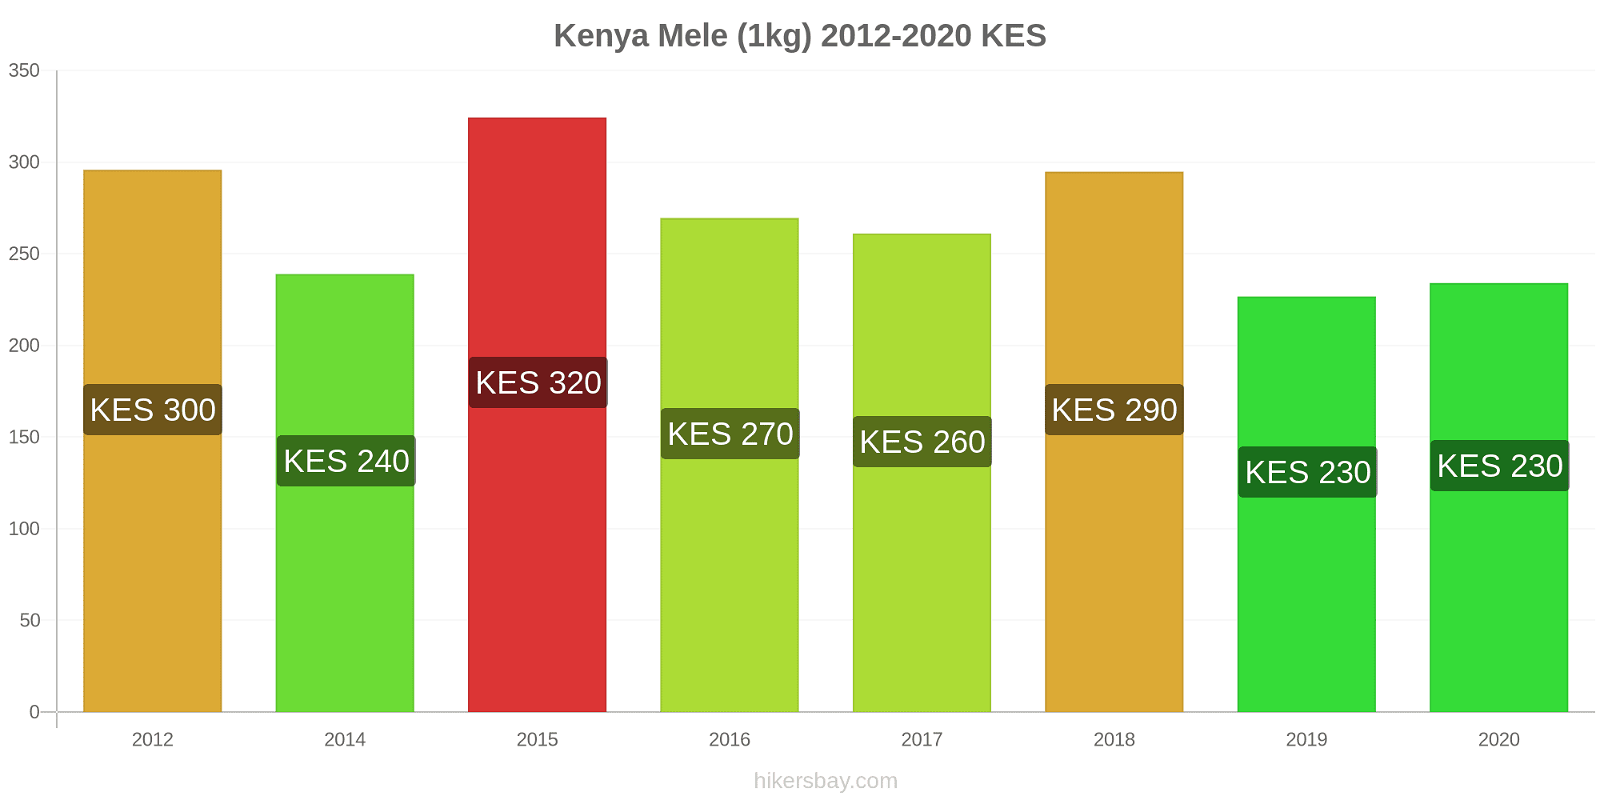 Kenya variazioni di prezzo Mele (1kg) hikersbay.com